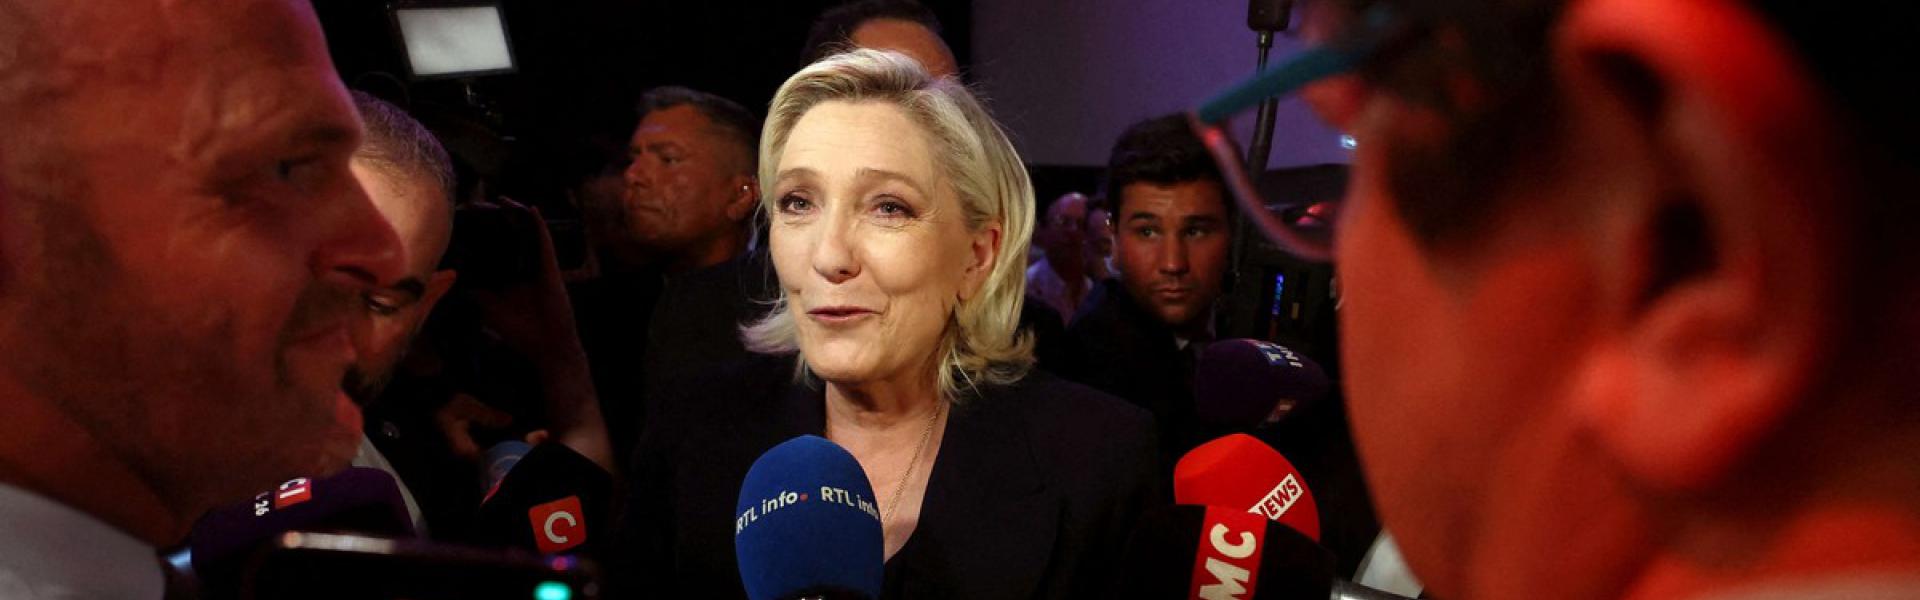 انتخاب مارين لوبان يثير مخاوف الجزائر